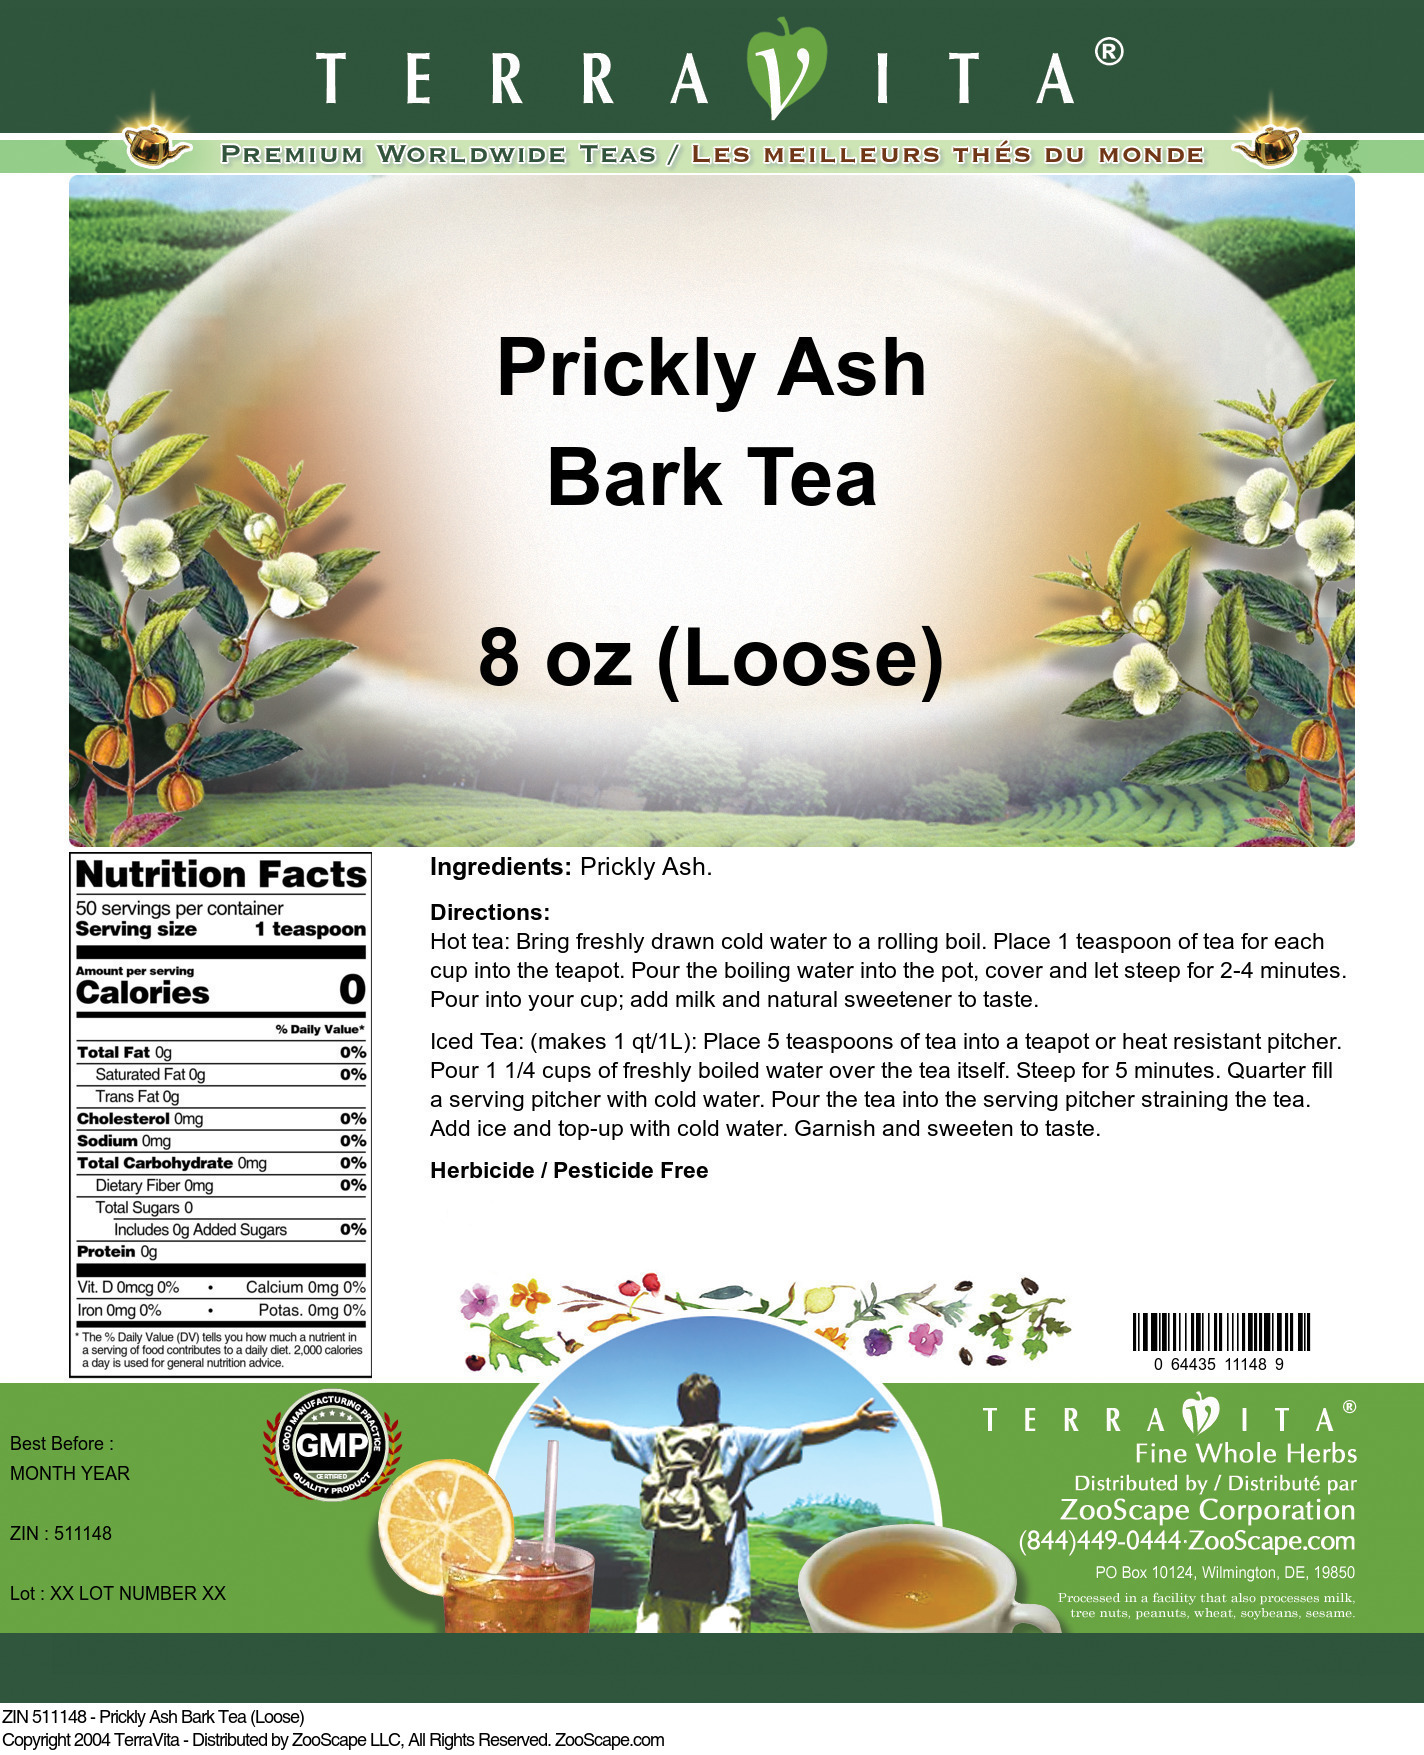 Prickly Ash Bark Tea (Loose) - Label